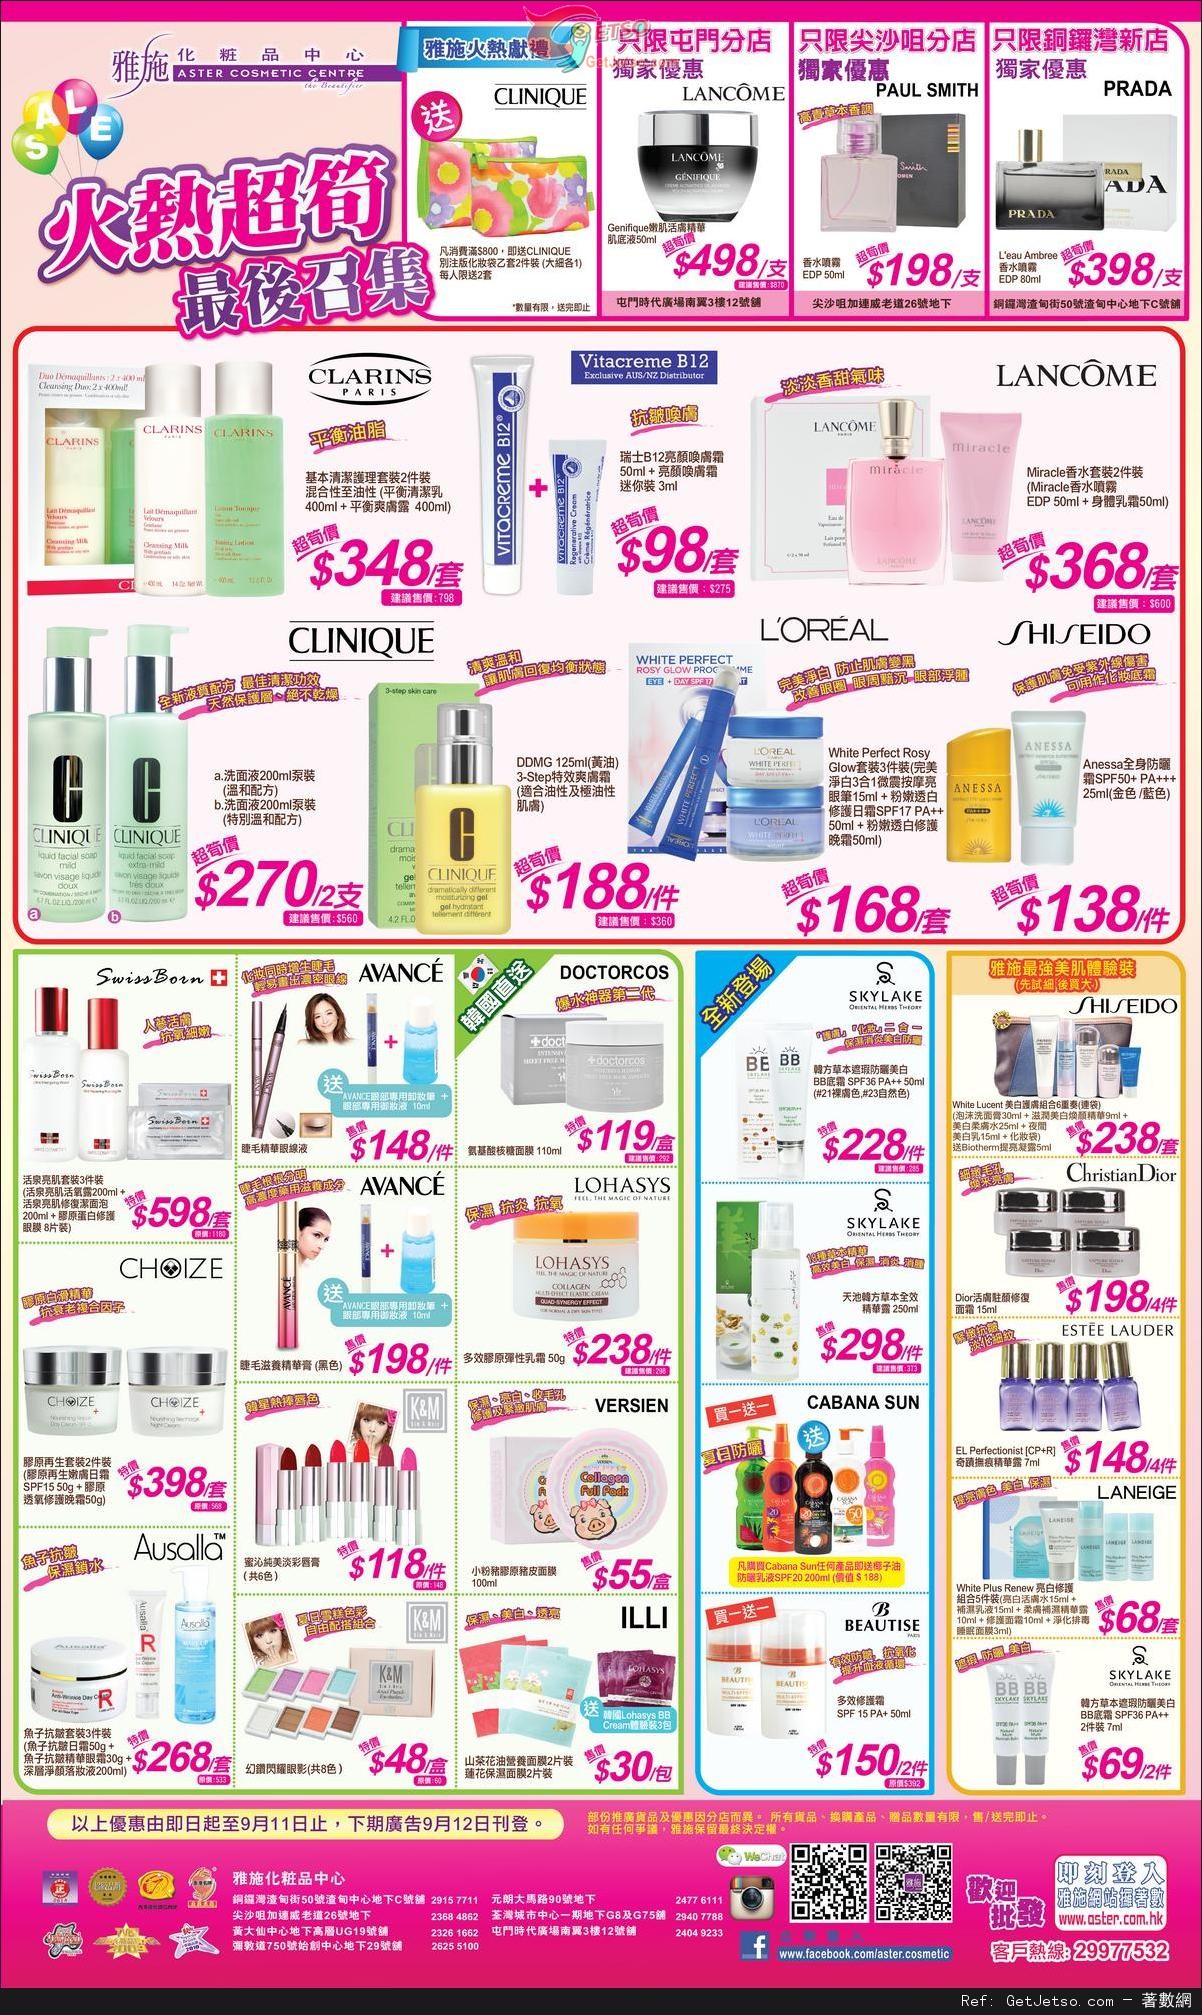 雅施化妝品中心超筍火熱價購物優惠(至14年9月11日)圖片1